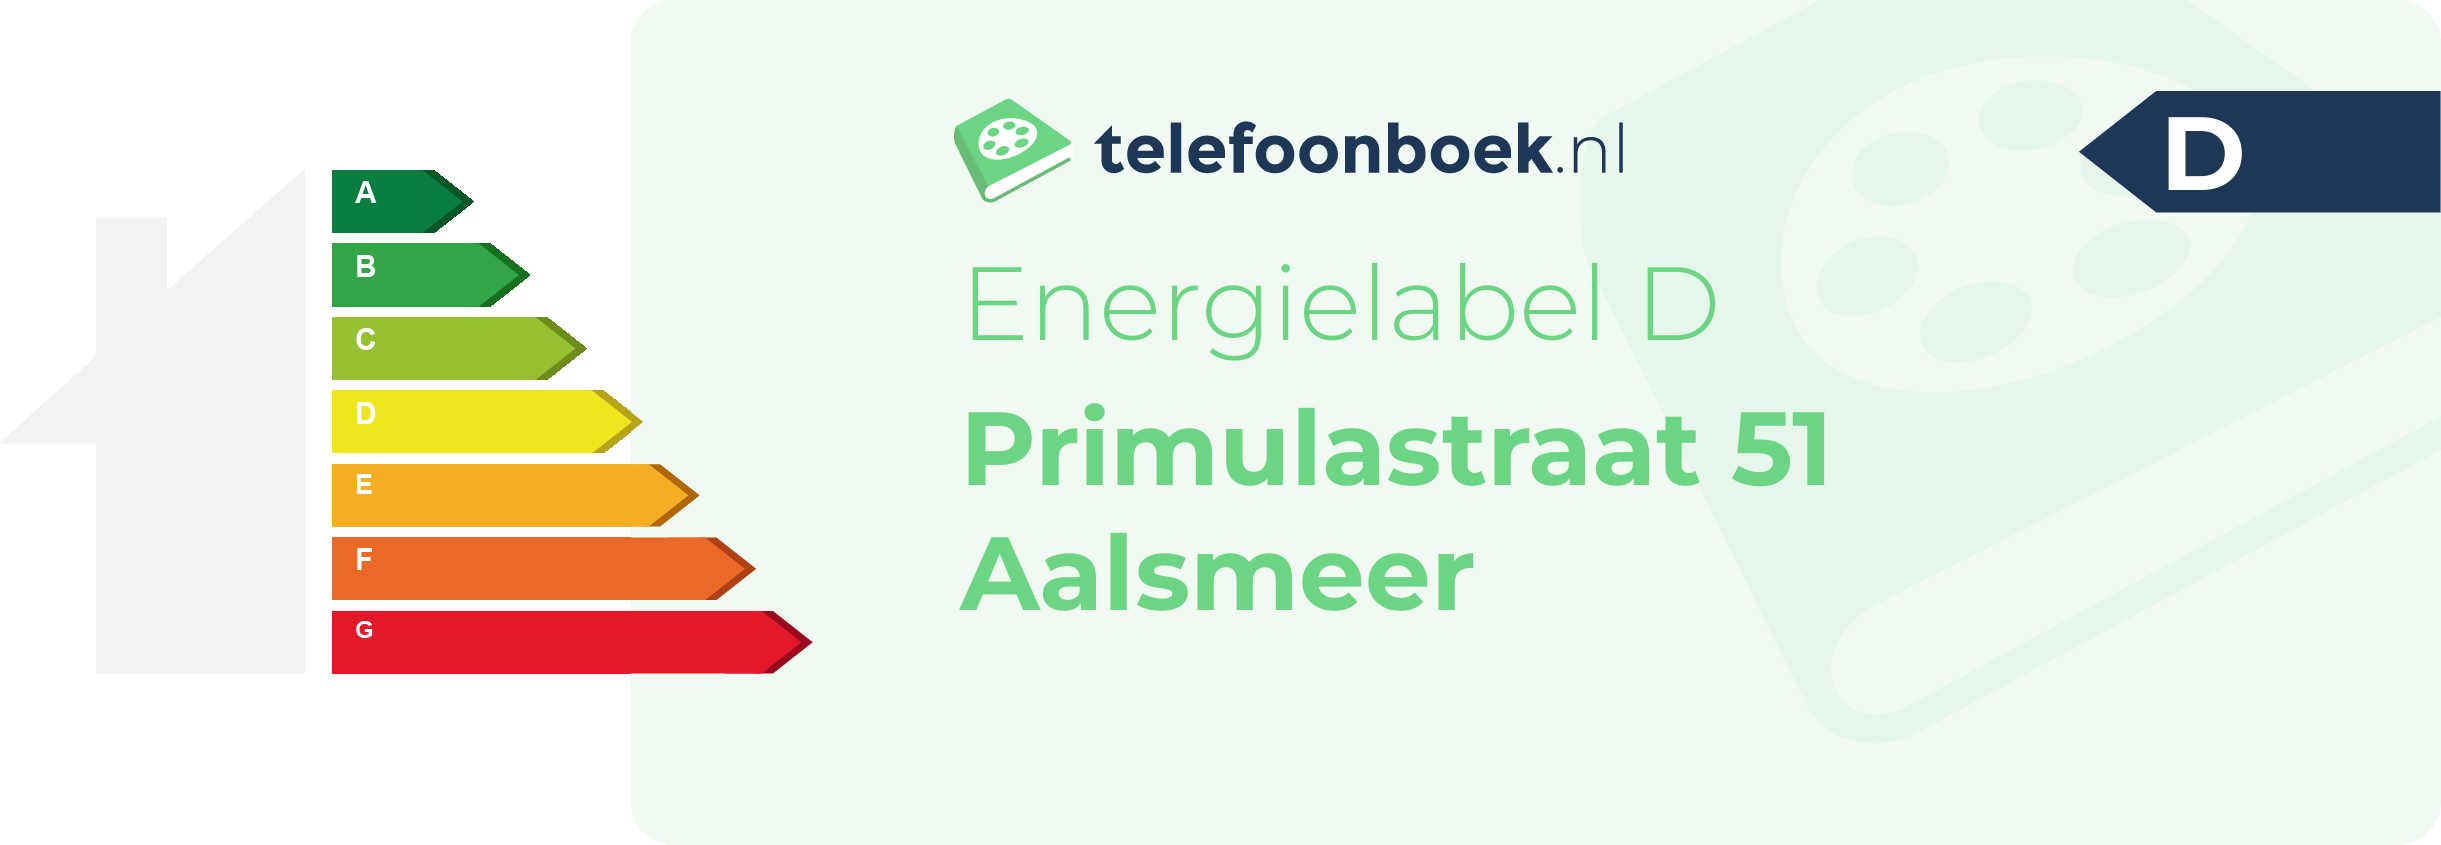 Energielabel Primulastraat 51 Aalsmeer